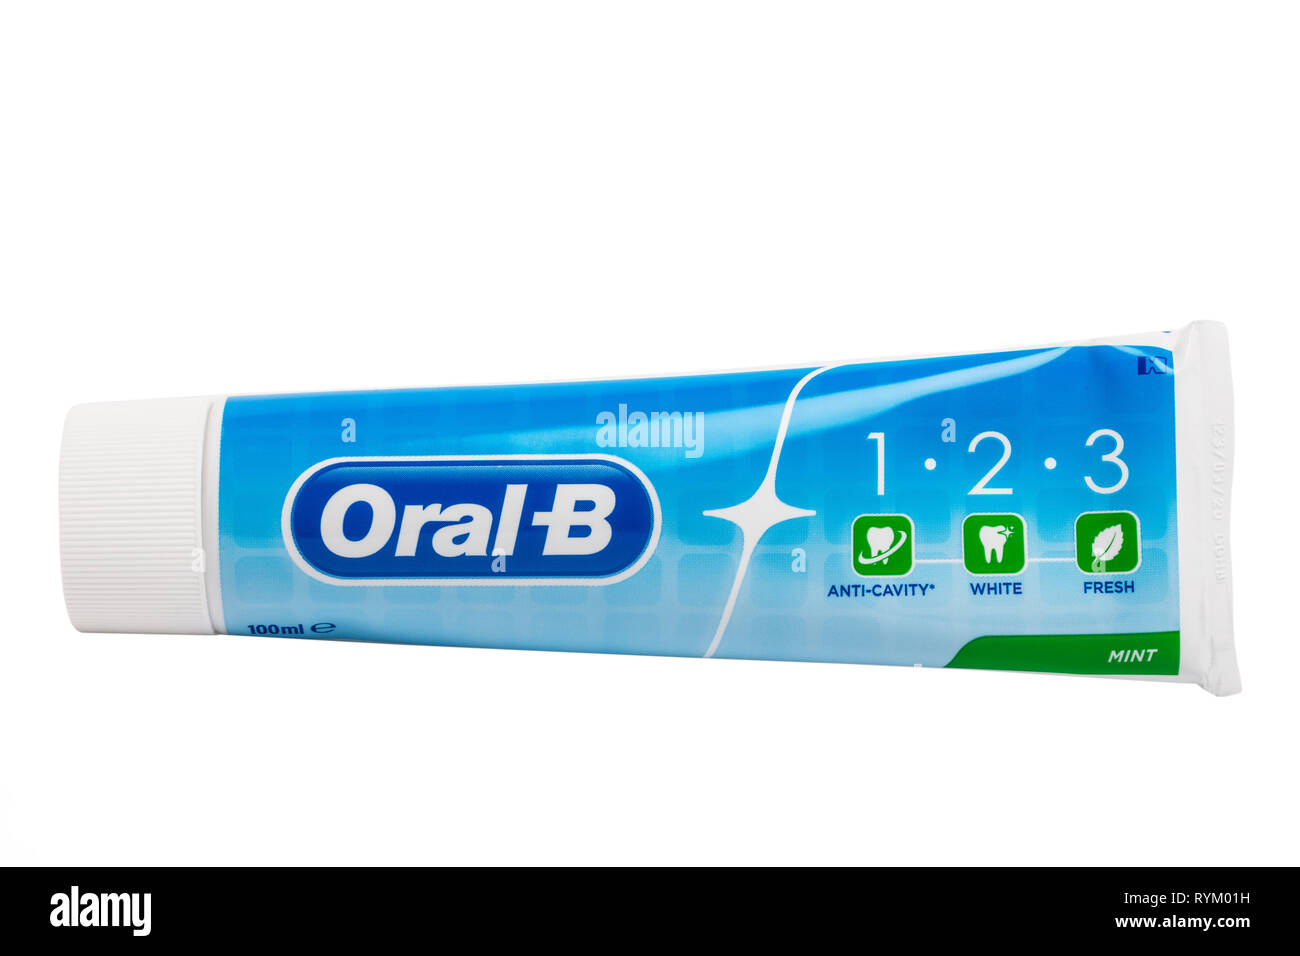 Un tubo de pasta de dientes Oral-B de menta con fluoruro activo sobre un fondo blanco. Foto de stock